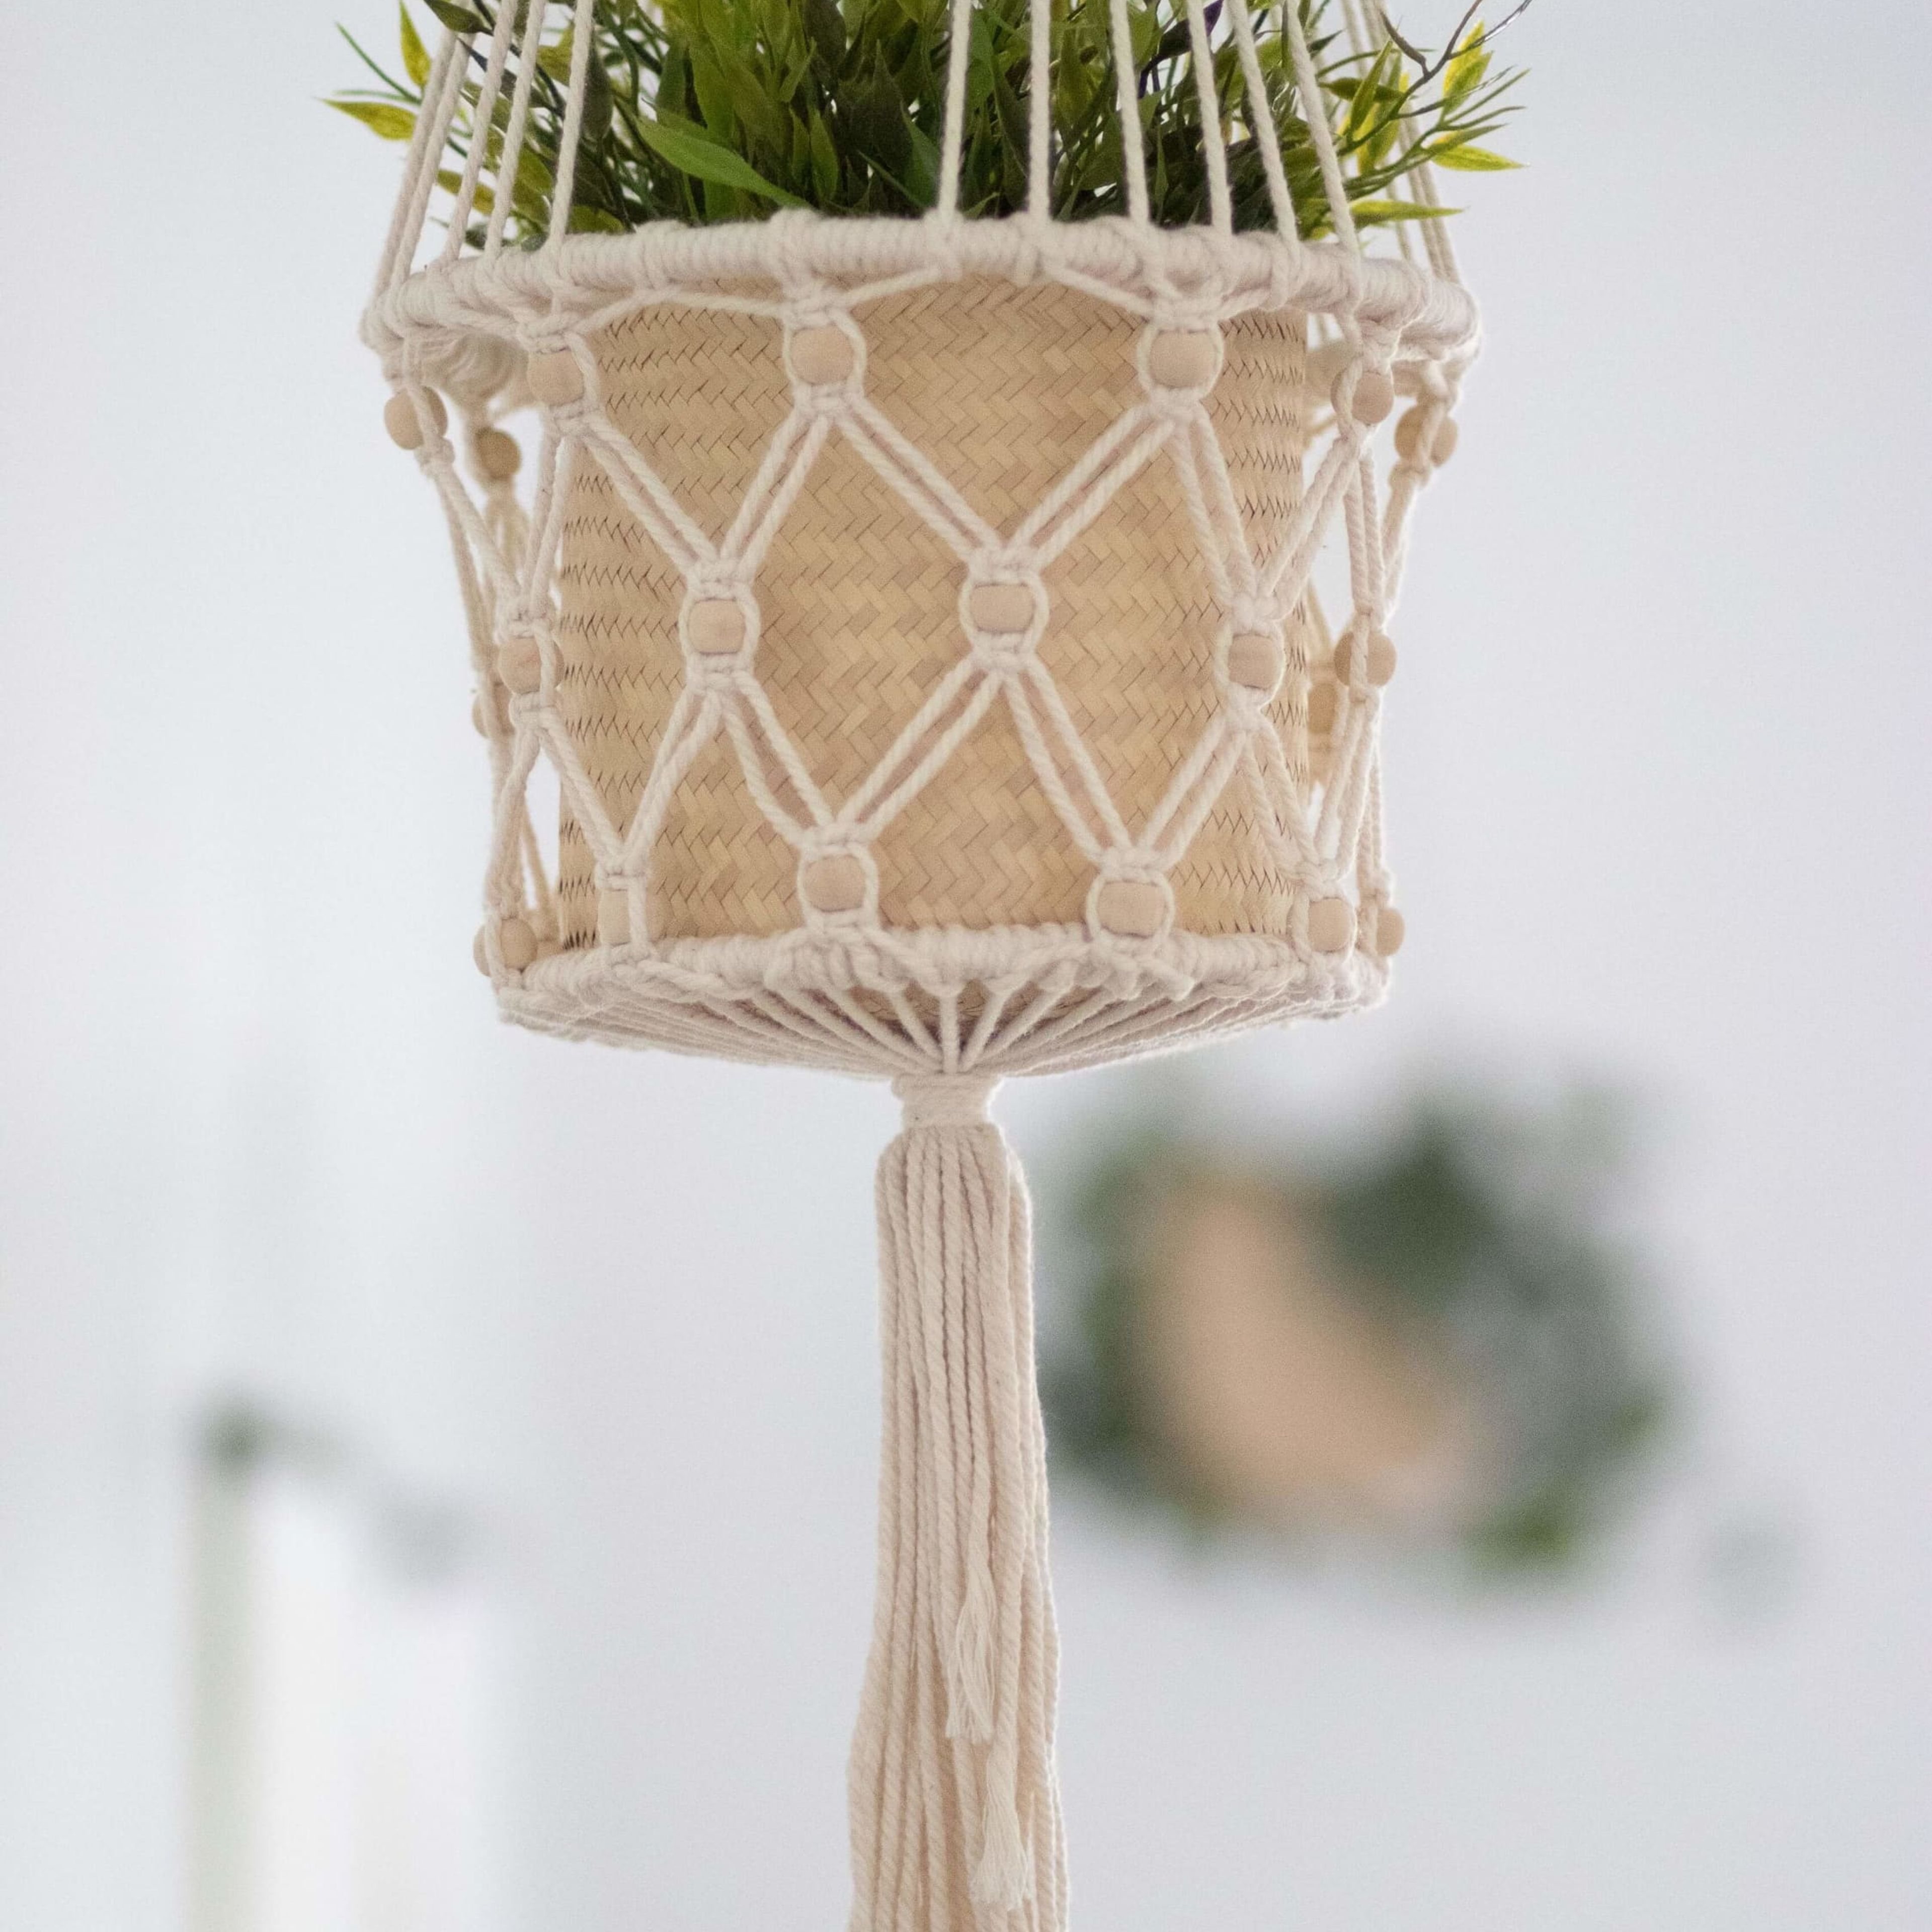 Beaded Plant Hanger Basket